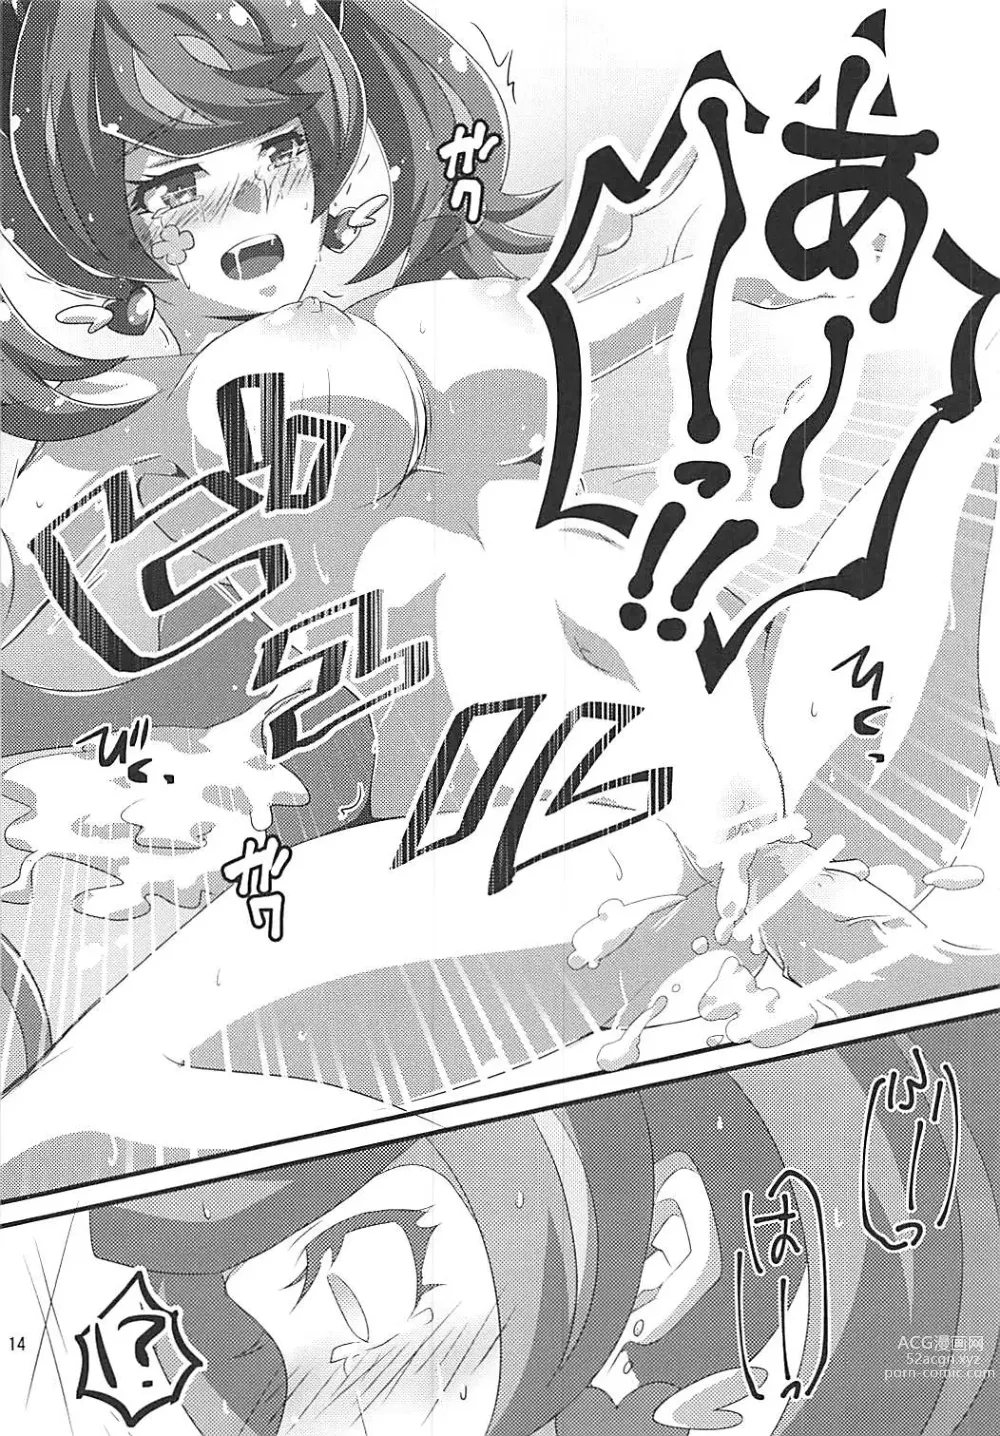 Page 14 of doujinshi Aoibana